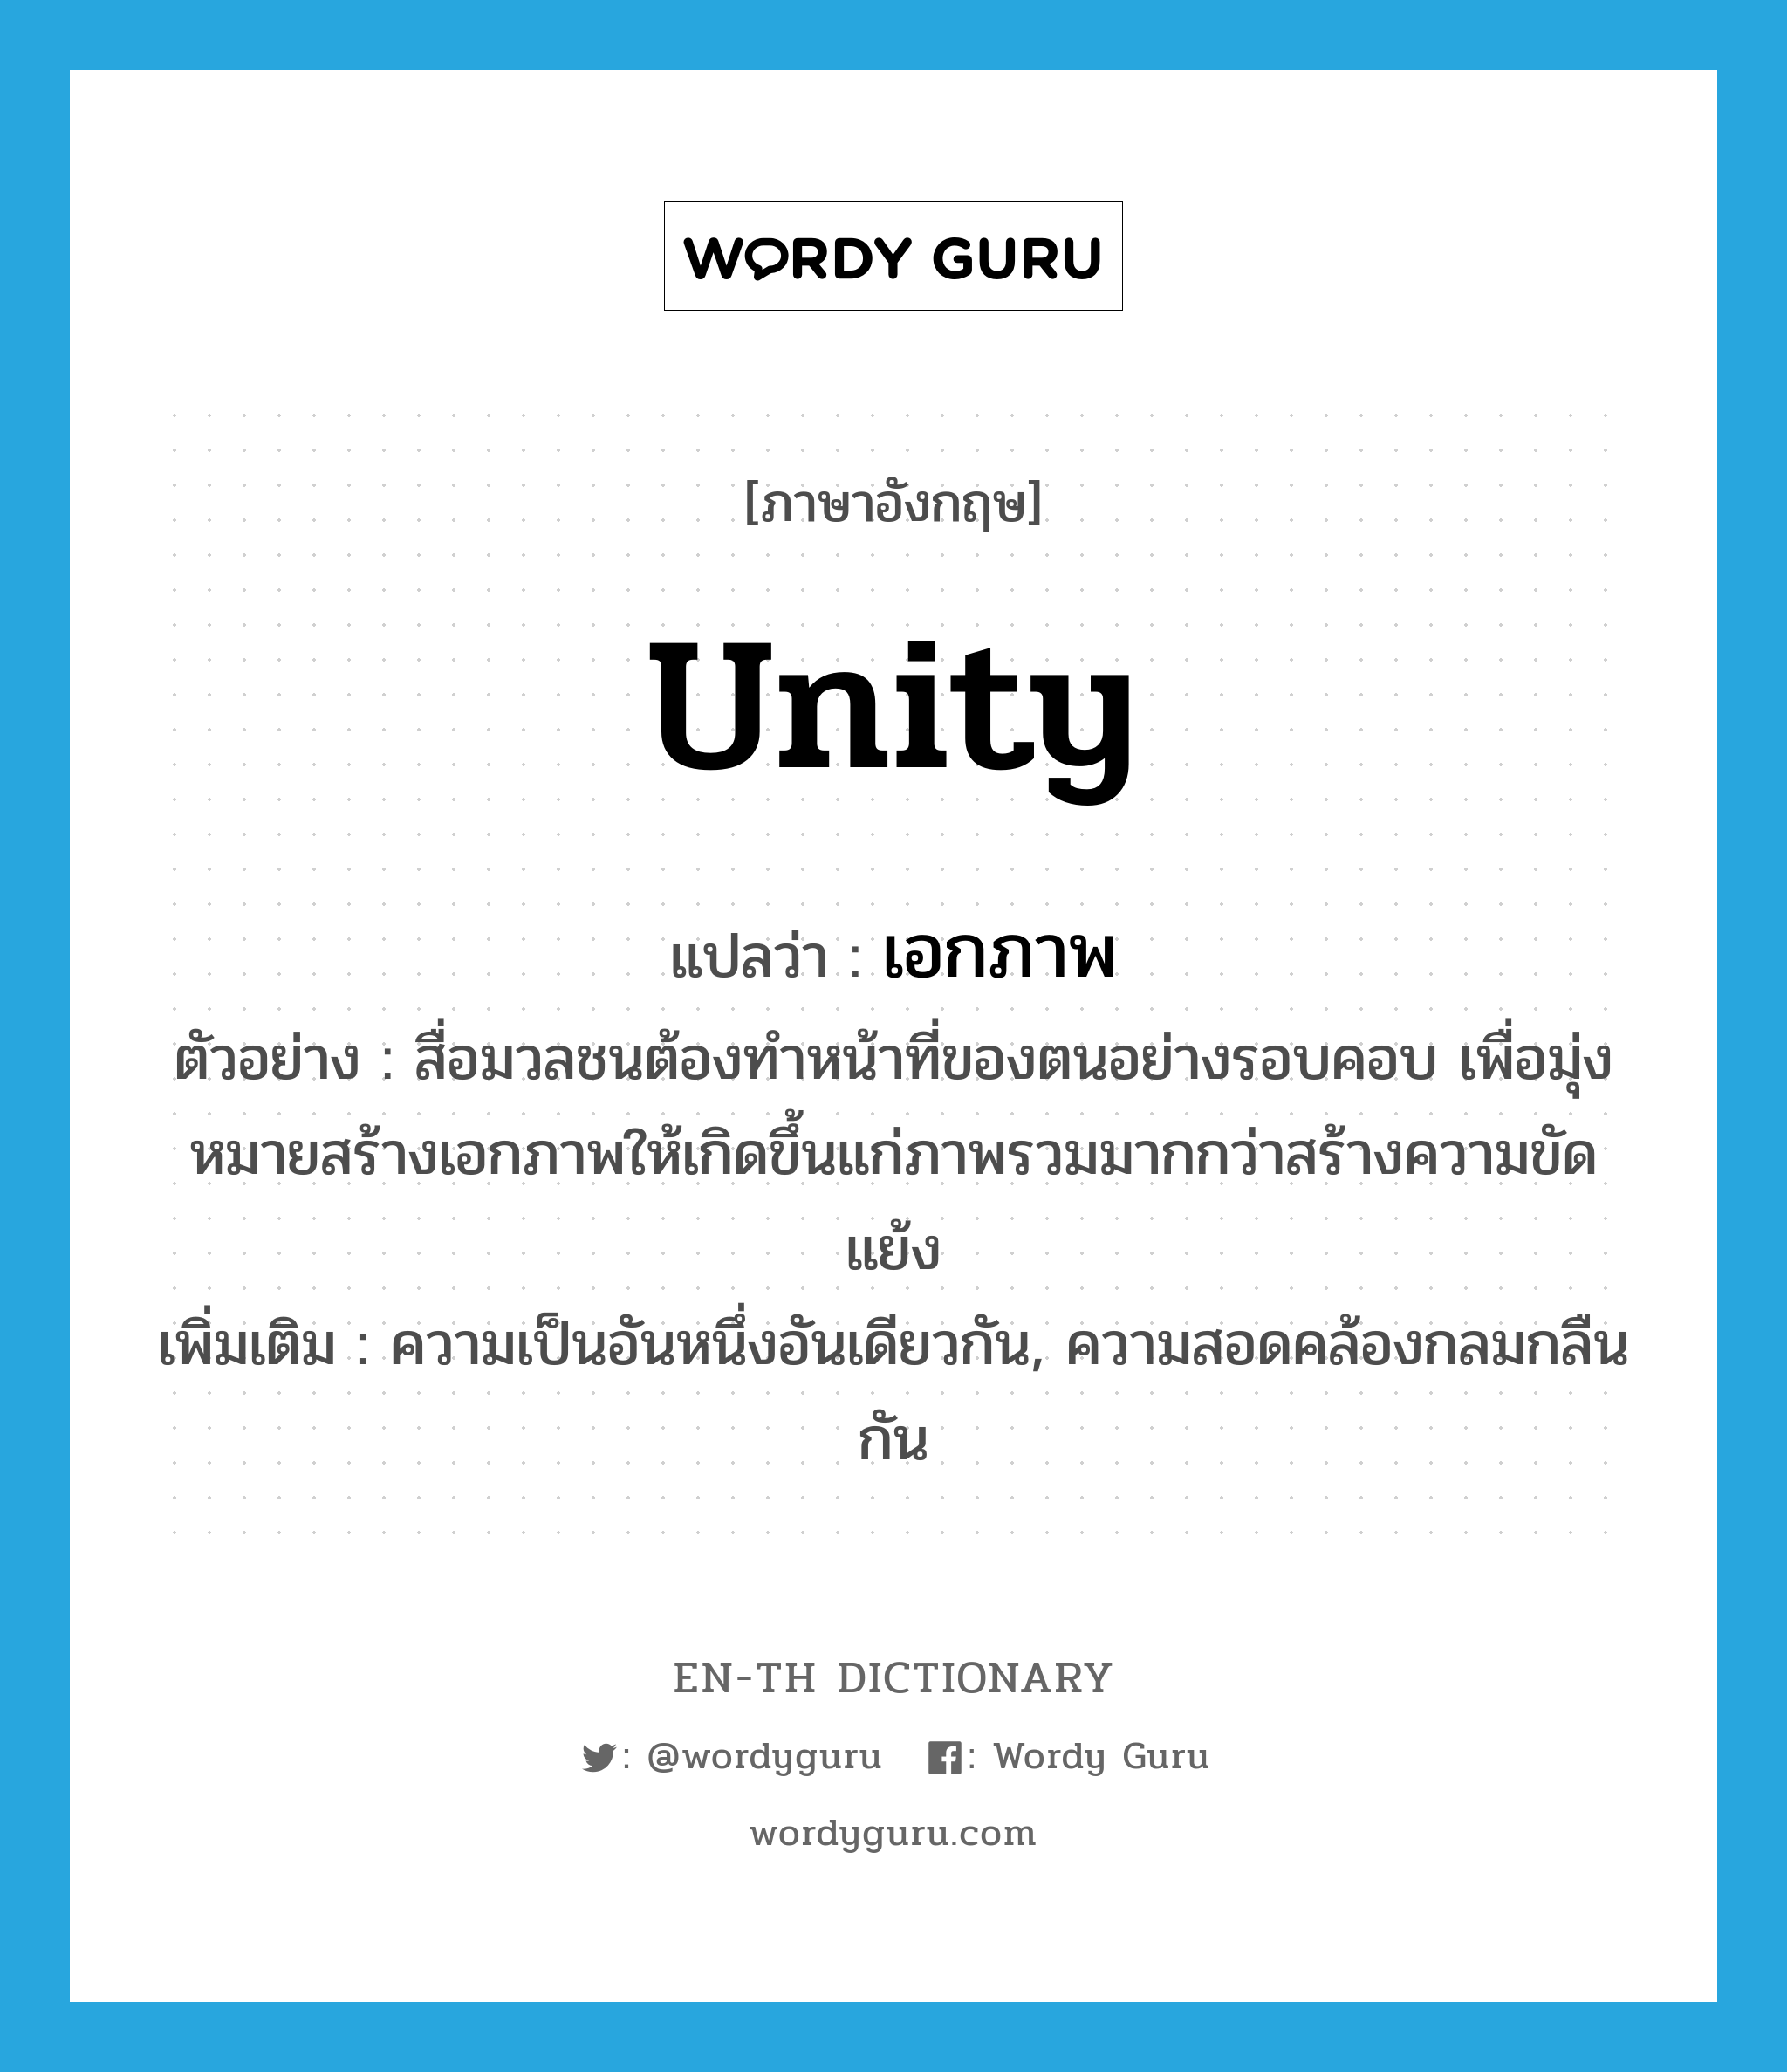 unity แปลว่า?, คำศัพท์ภาษาอังกฤษ unity แปลว่า เอกภาพ ประเภท N ตัวอย่าง สื่อมวลชนต้องทำหน้าที่ของตนอย่างรอบคอบ เพื่อมุ่งหมายสร้างเอกภาพให้เกิดขึ้นแก่ภาพรวมมากกว่าสร้างความขัดแย้ง เพิ่มเติม ความเป็นอันหนึ่งอันเดียวกัน, ความสอดคล้องกลมกลืนกัน หมวด N